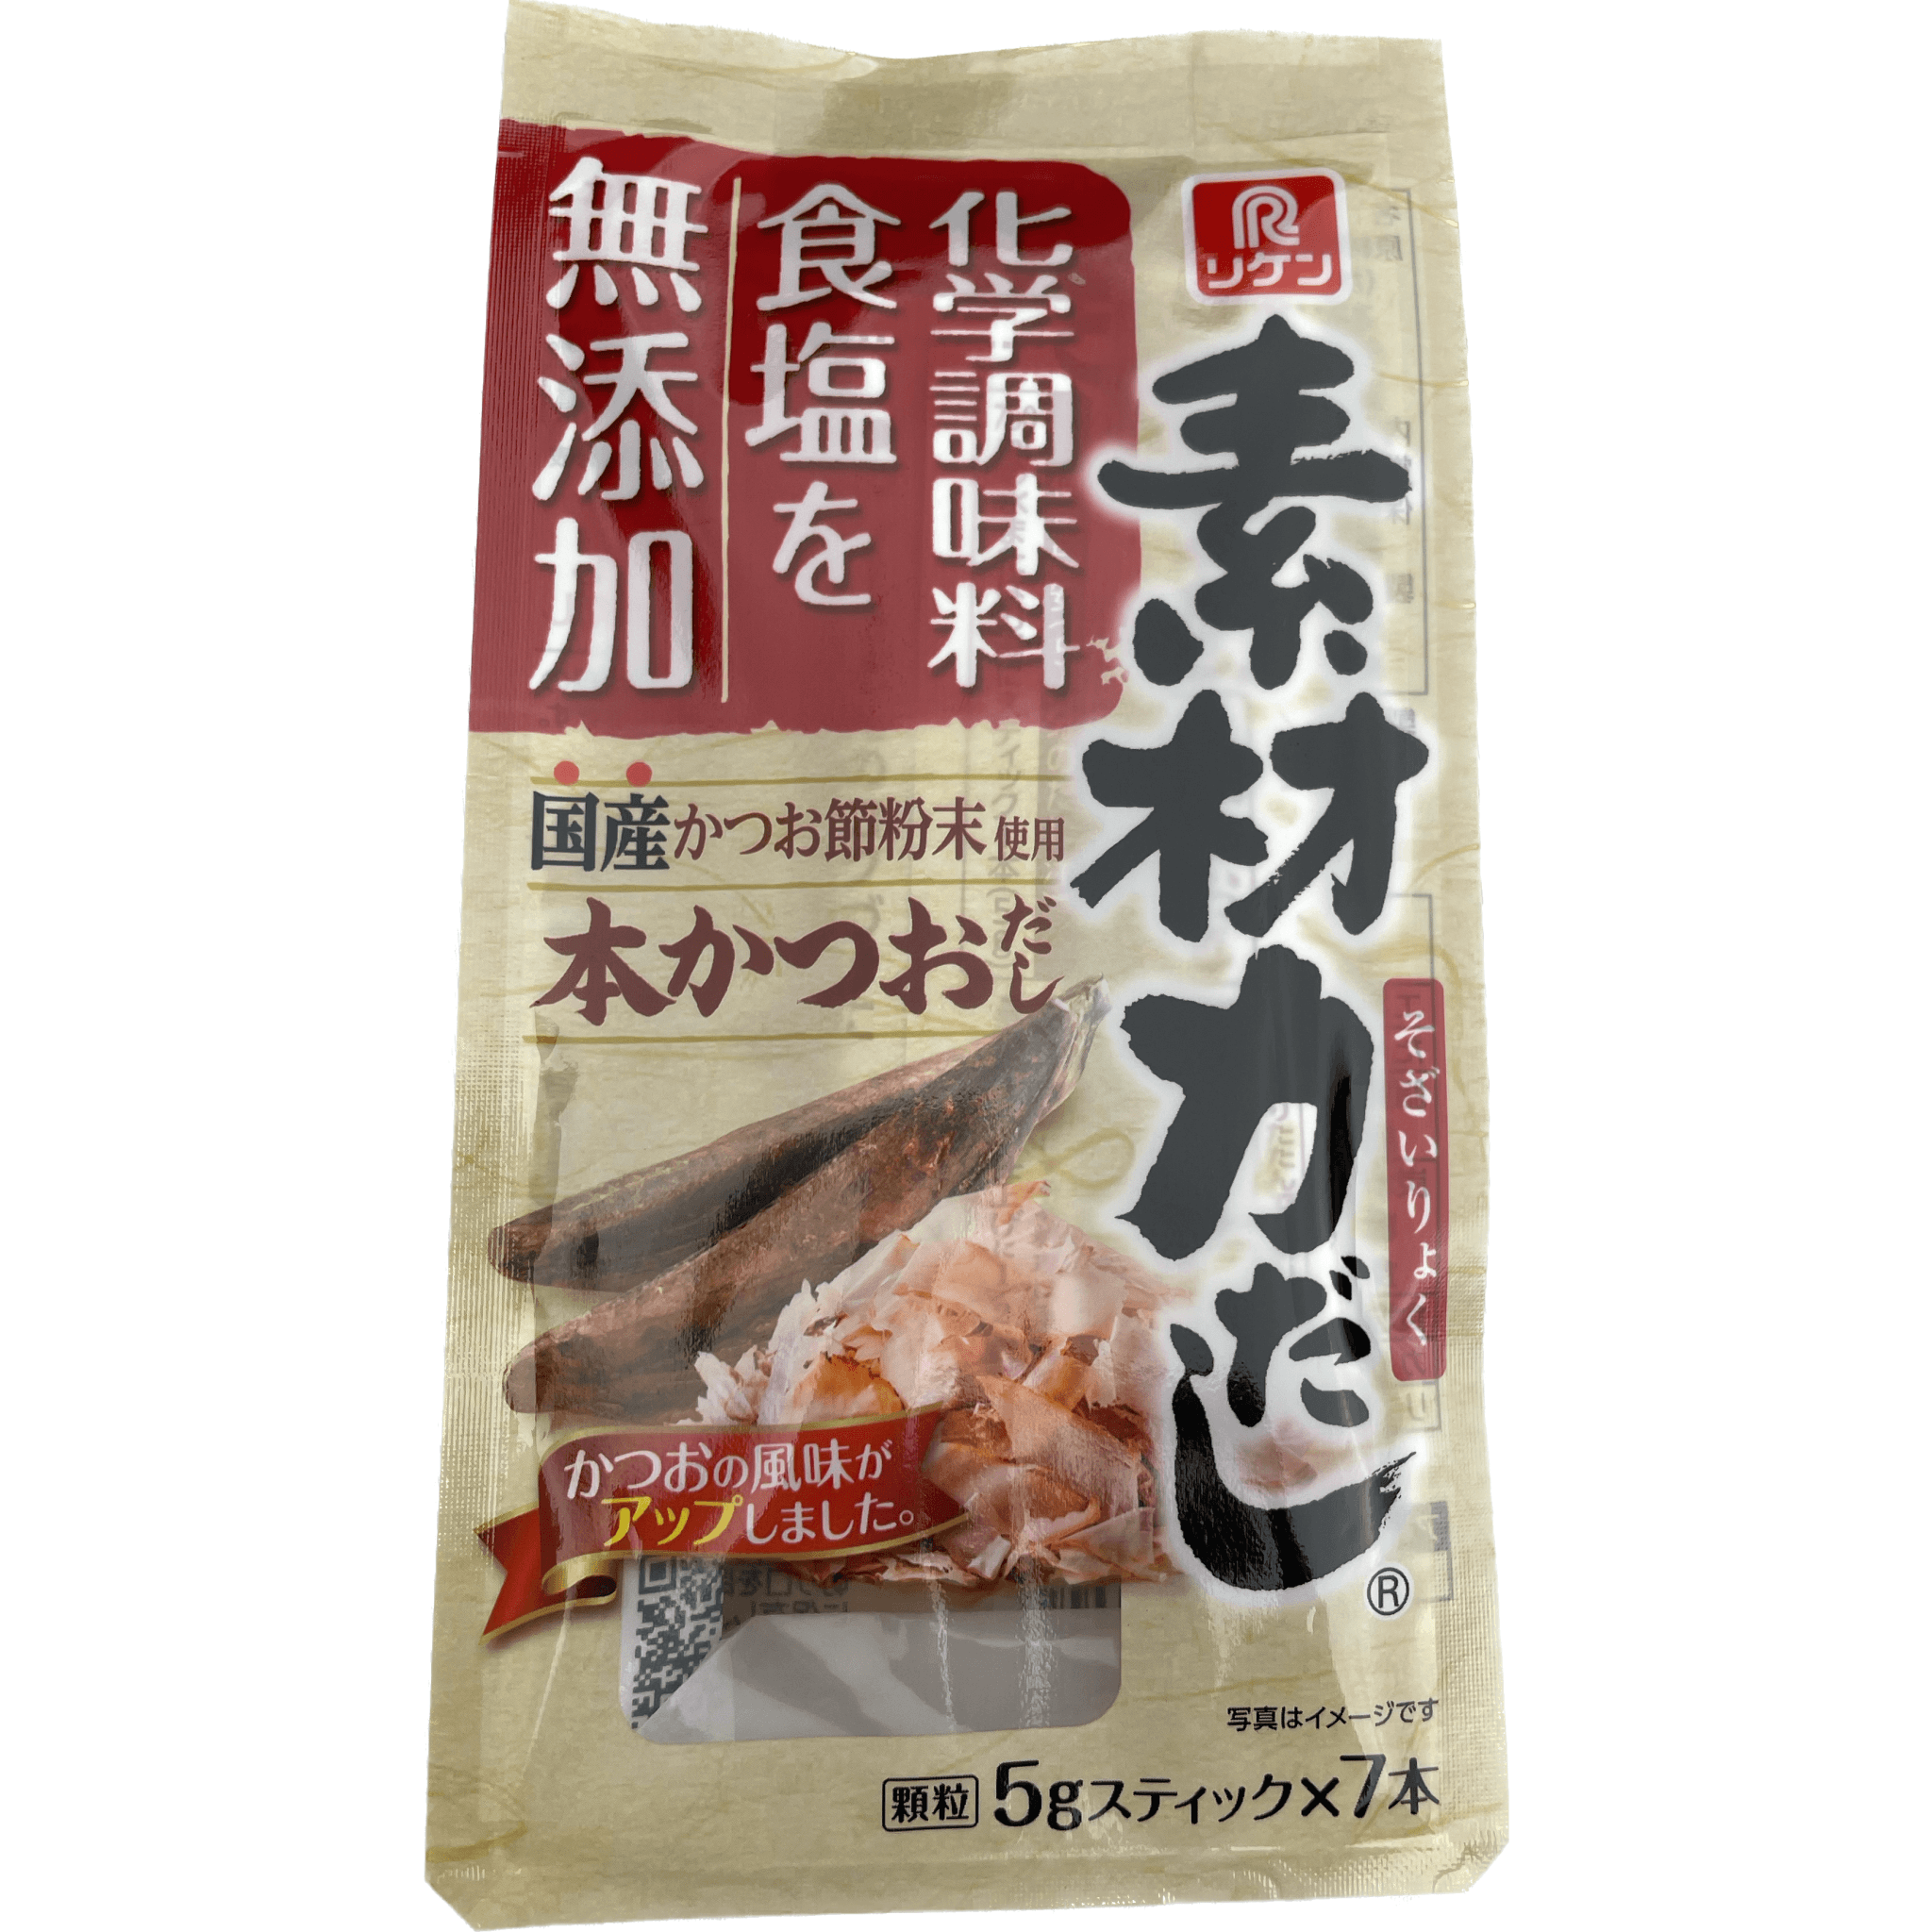 Riken's　素材力だ　35g　Honkatsuo　Ingredient　リケン　Power　Dashi　Dashi　Granules　–　RiceWineShop